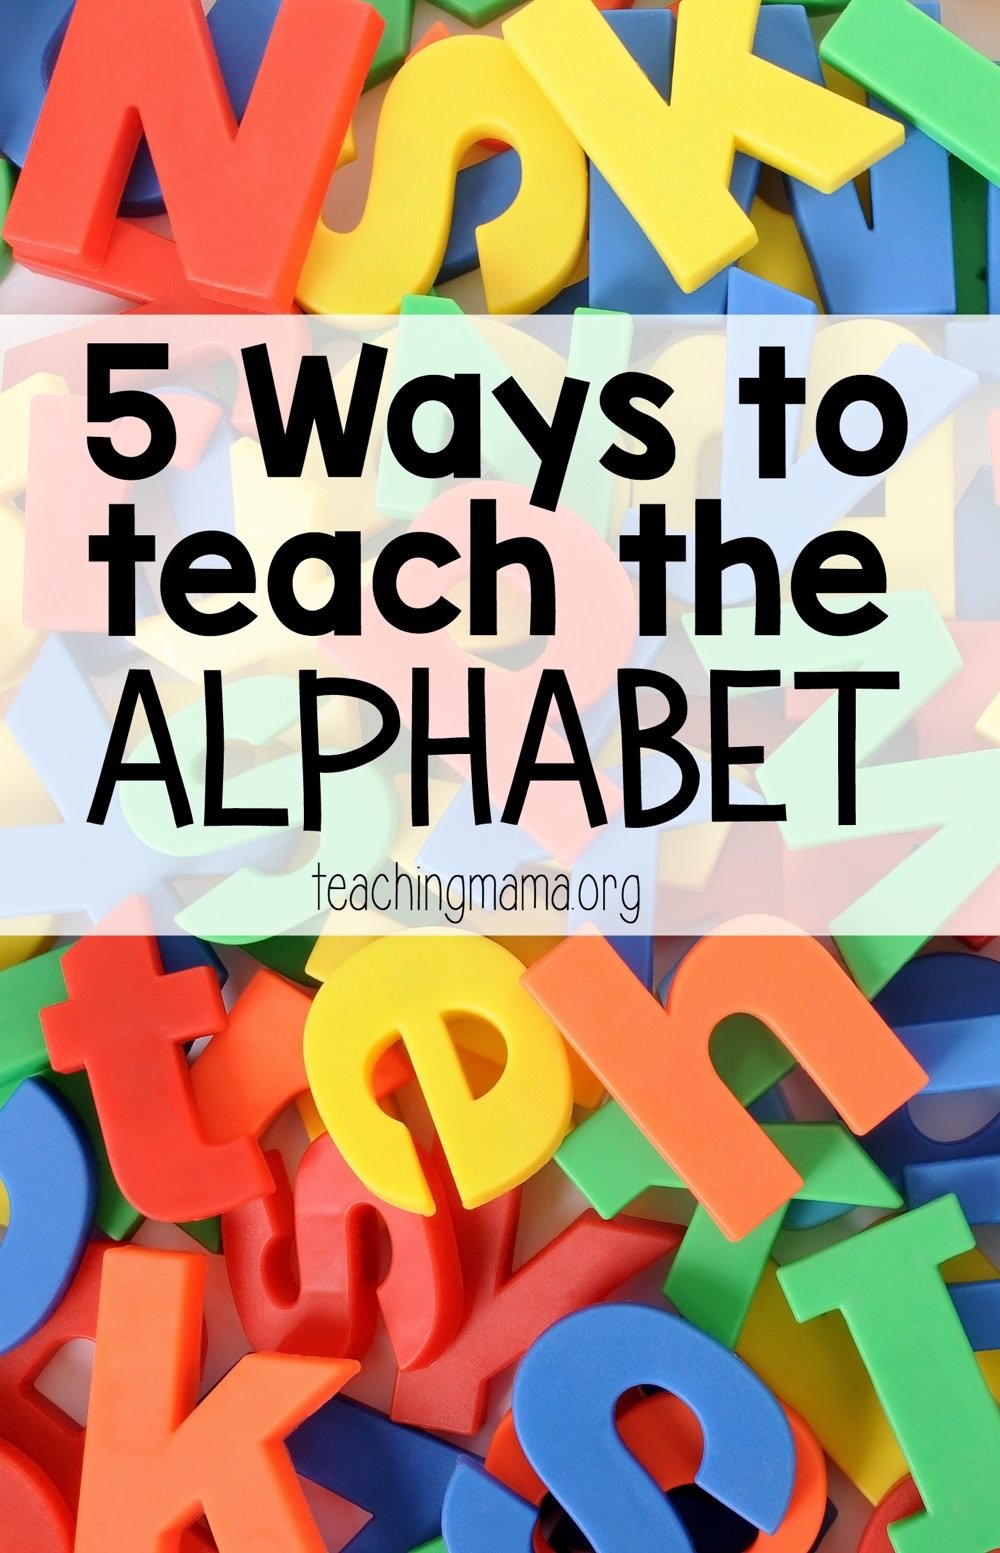 5 Ways to Teach the Alphabet